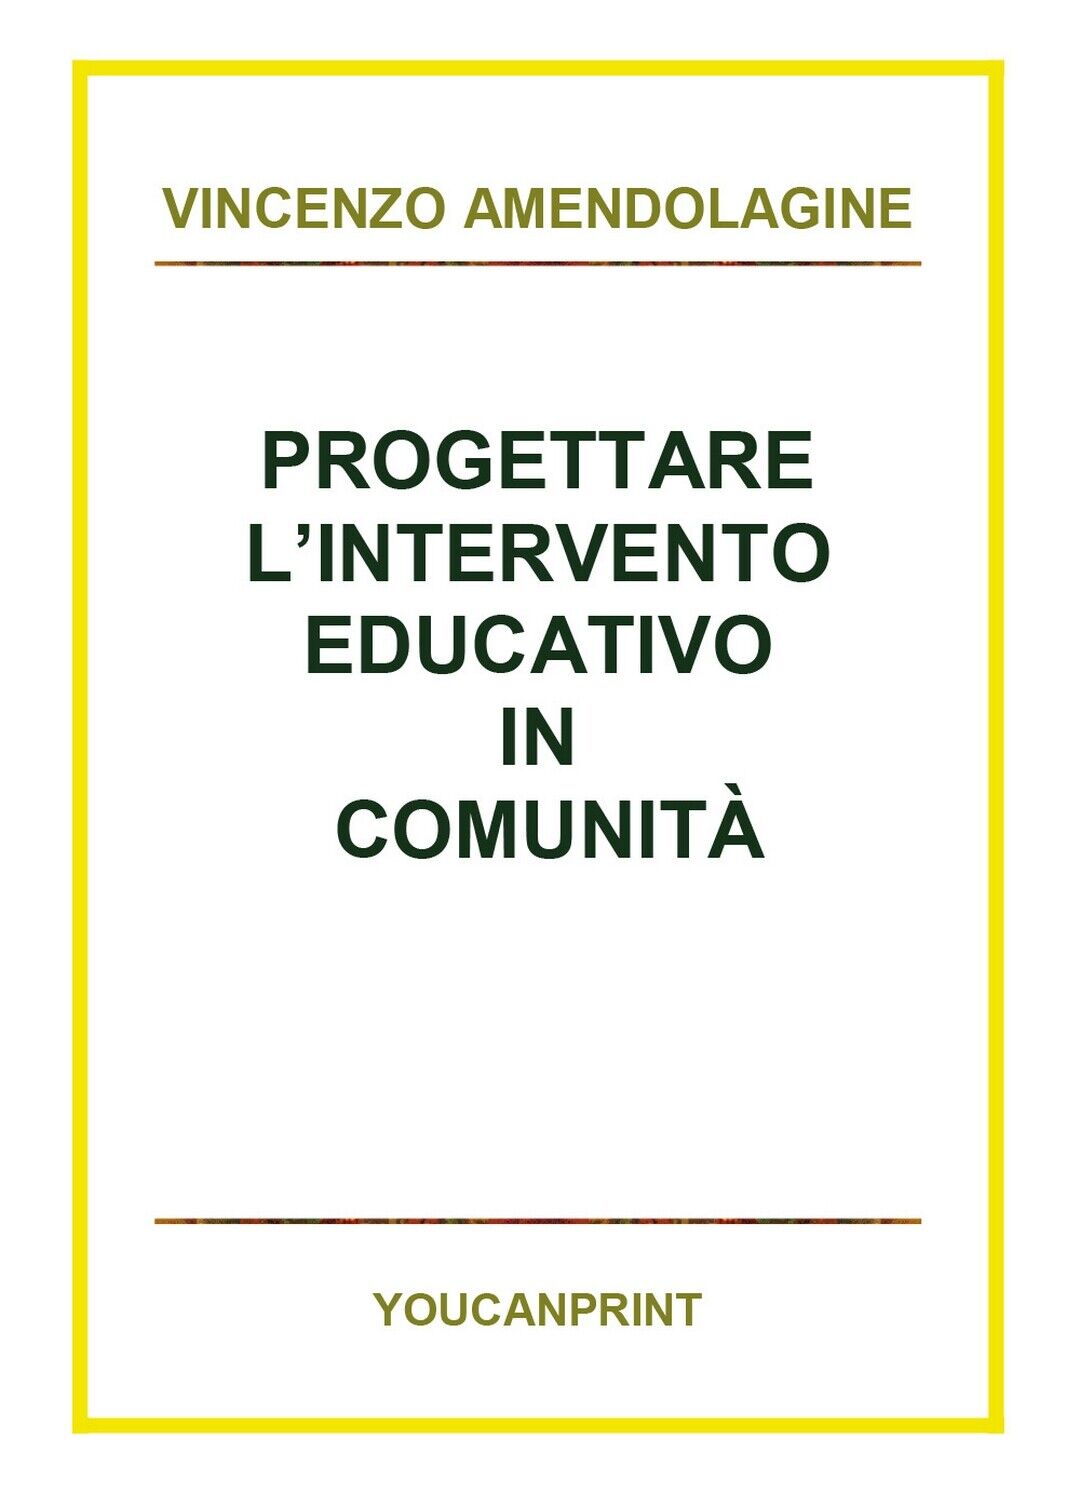 Progettare L'intervento educativo in comunit?, Vincenzo Amendolagine,  2018